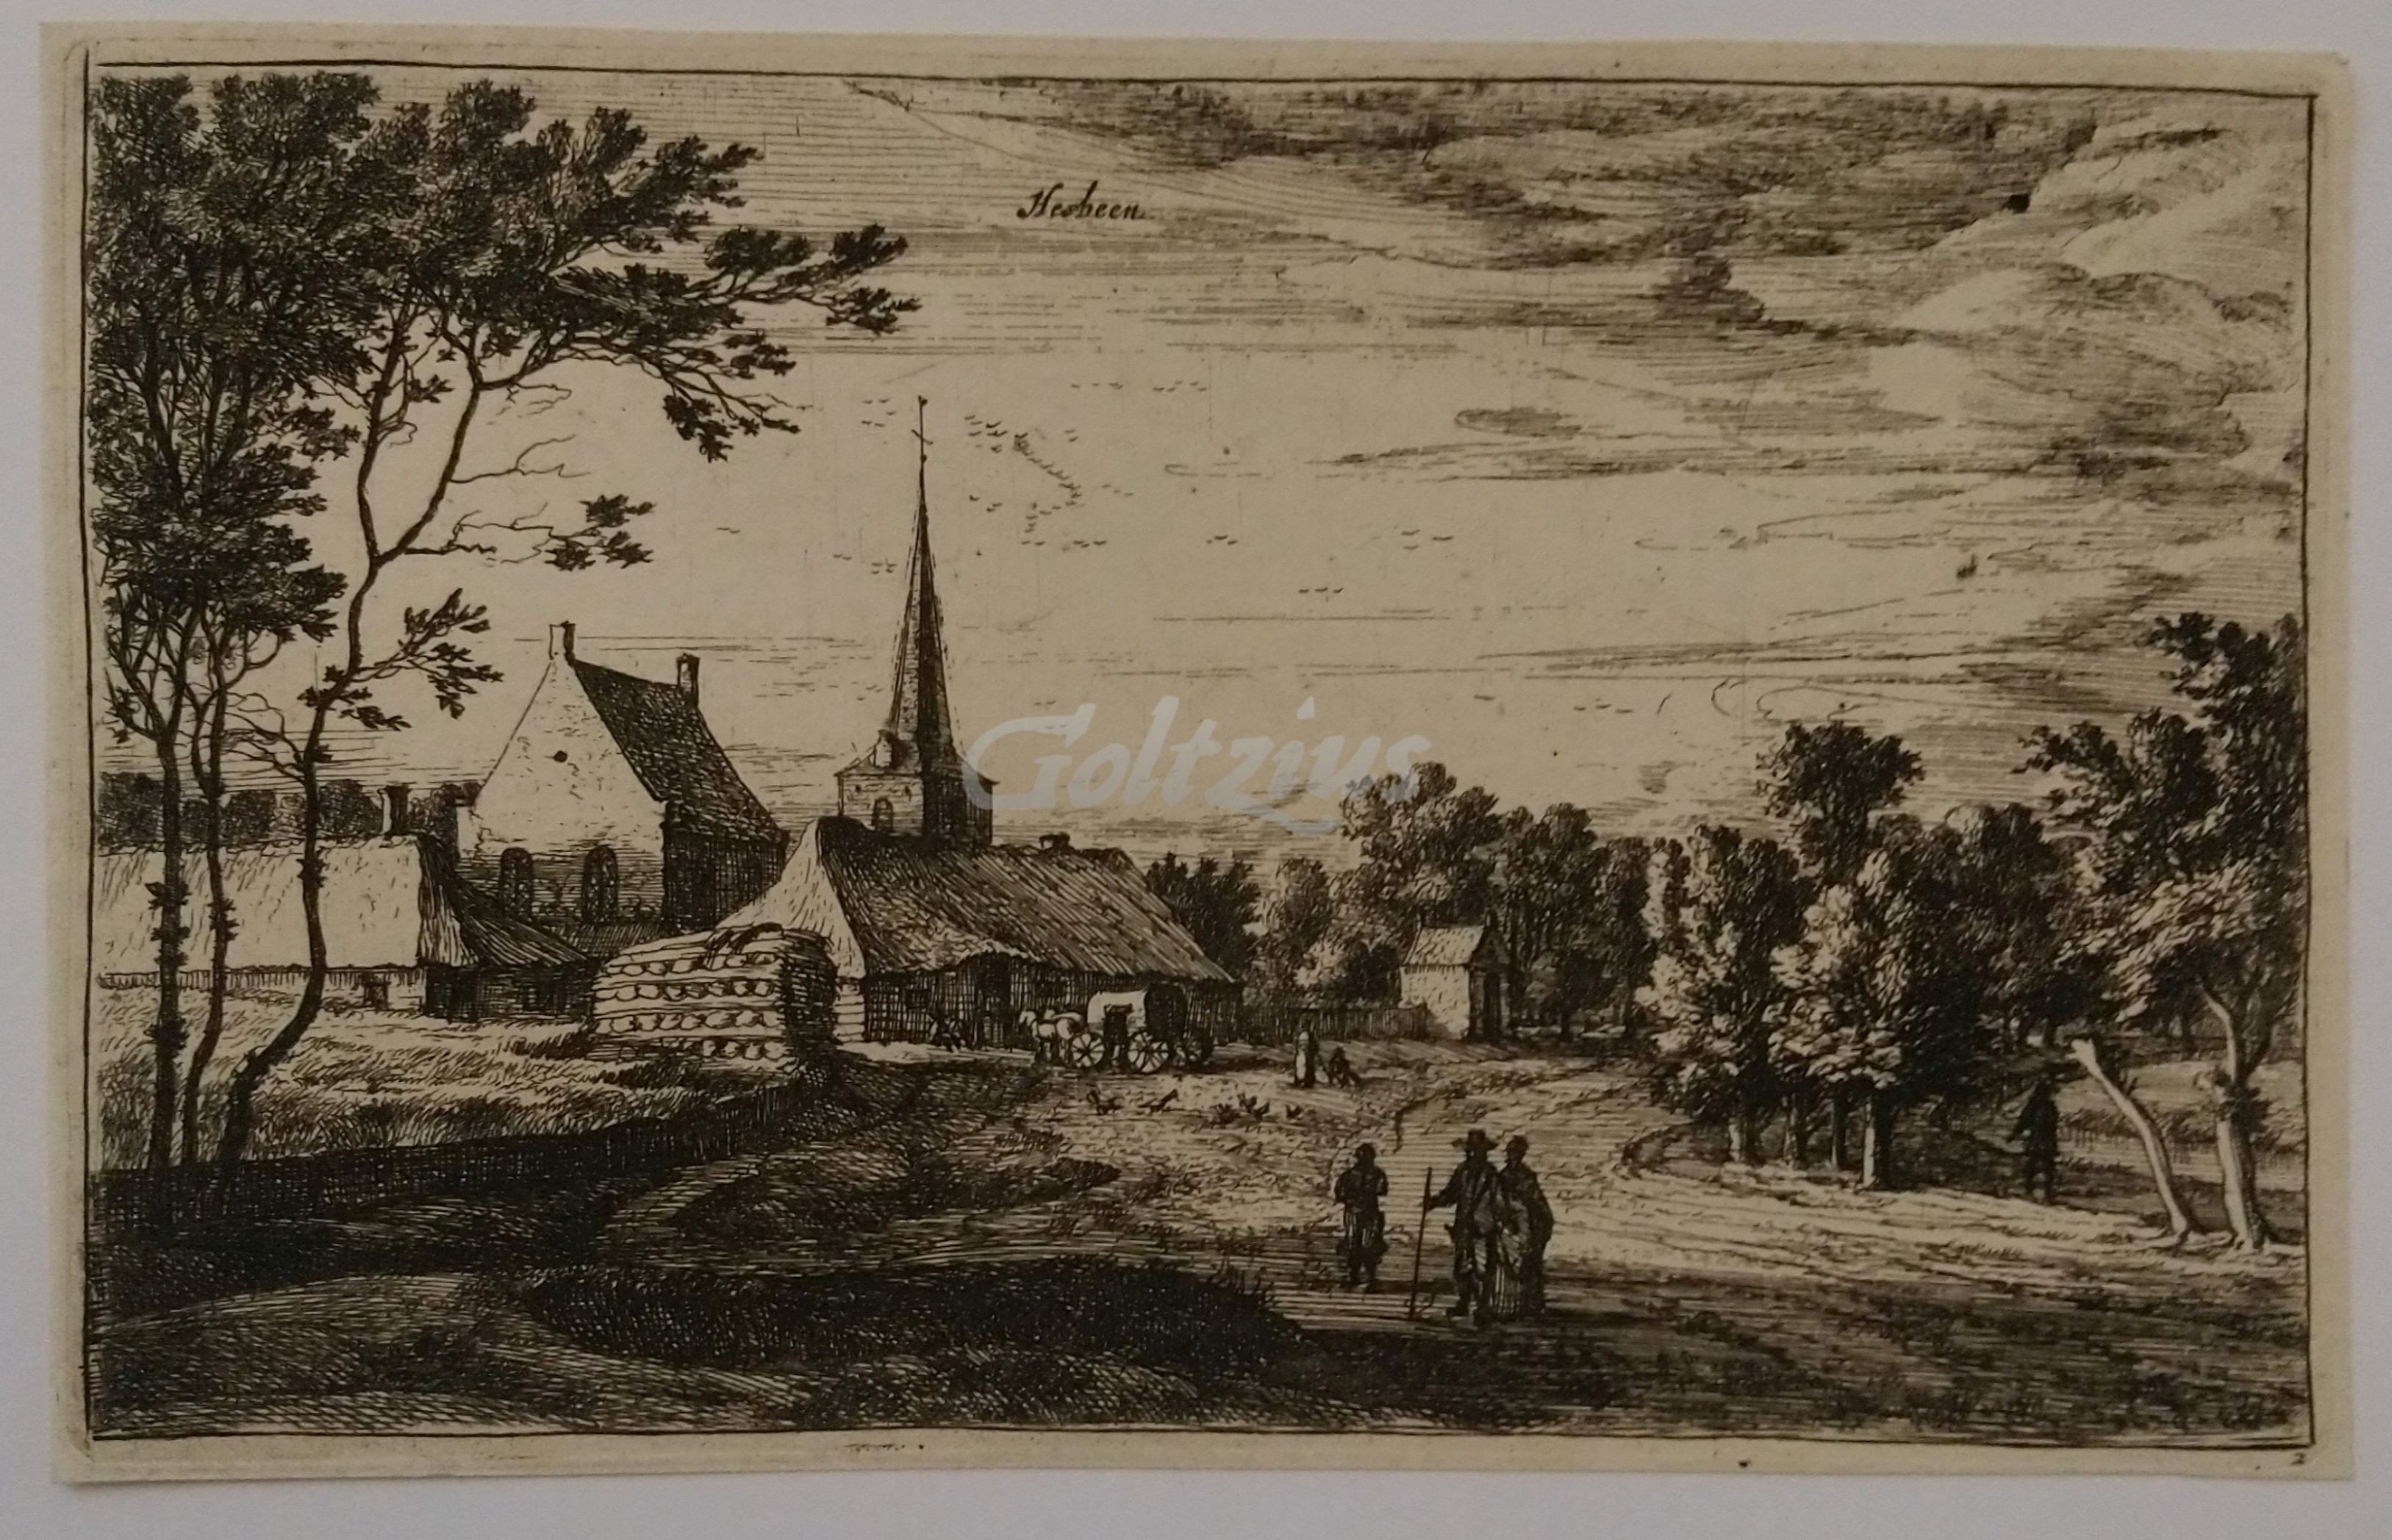 ROGHMAN, ROELANT (1627-1692), Hesbeen